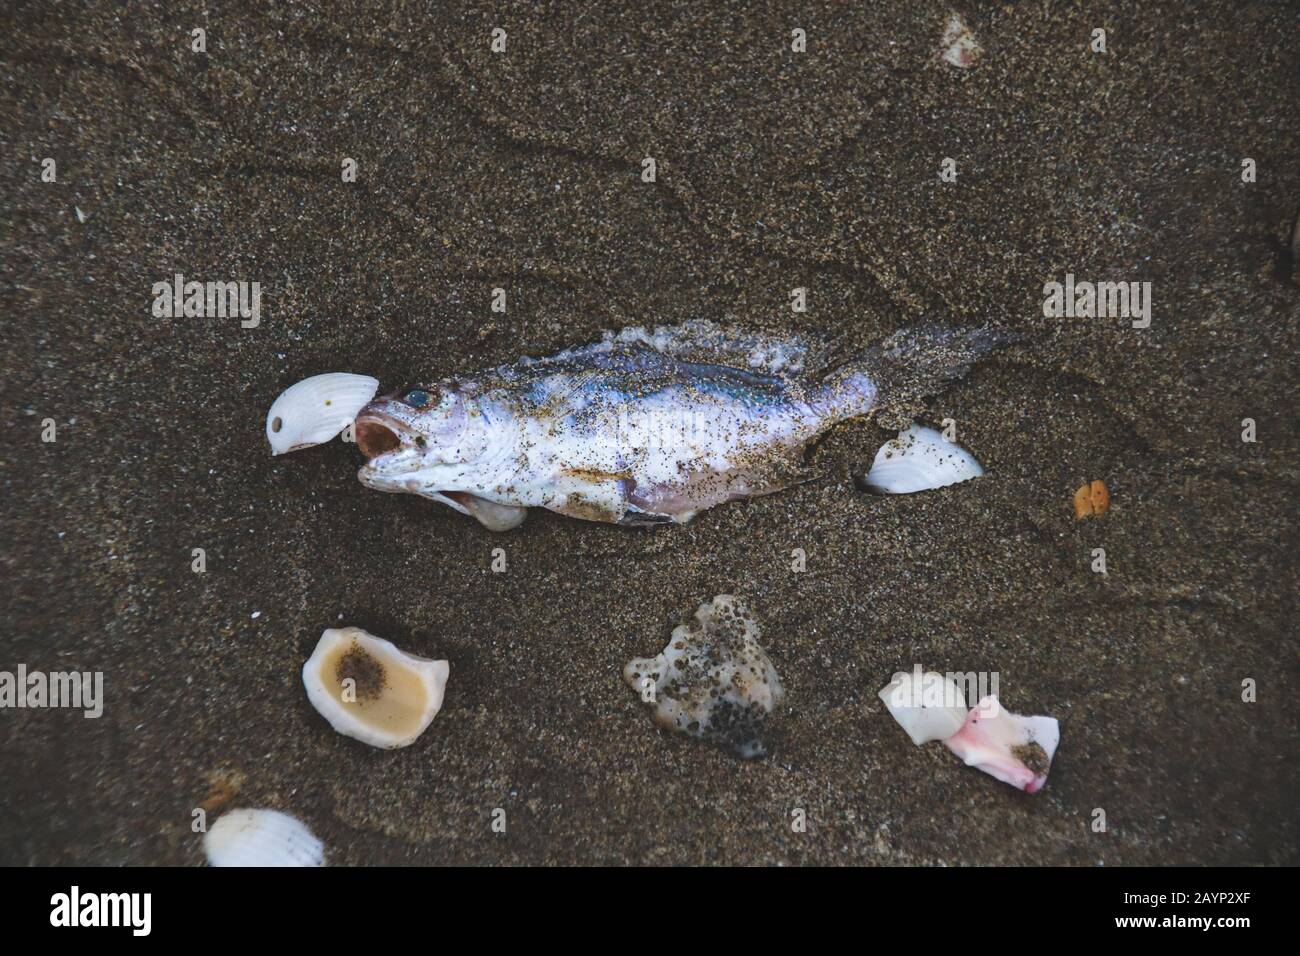 Pesci morti sulla sabbia che mostrano la marea rossa e gli effetti del cambiamento climatico, dell'inquinamento e dei danni ambientali Foto Stock